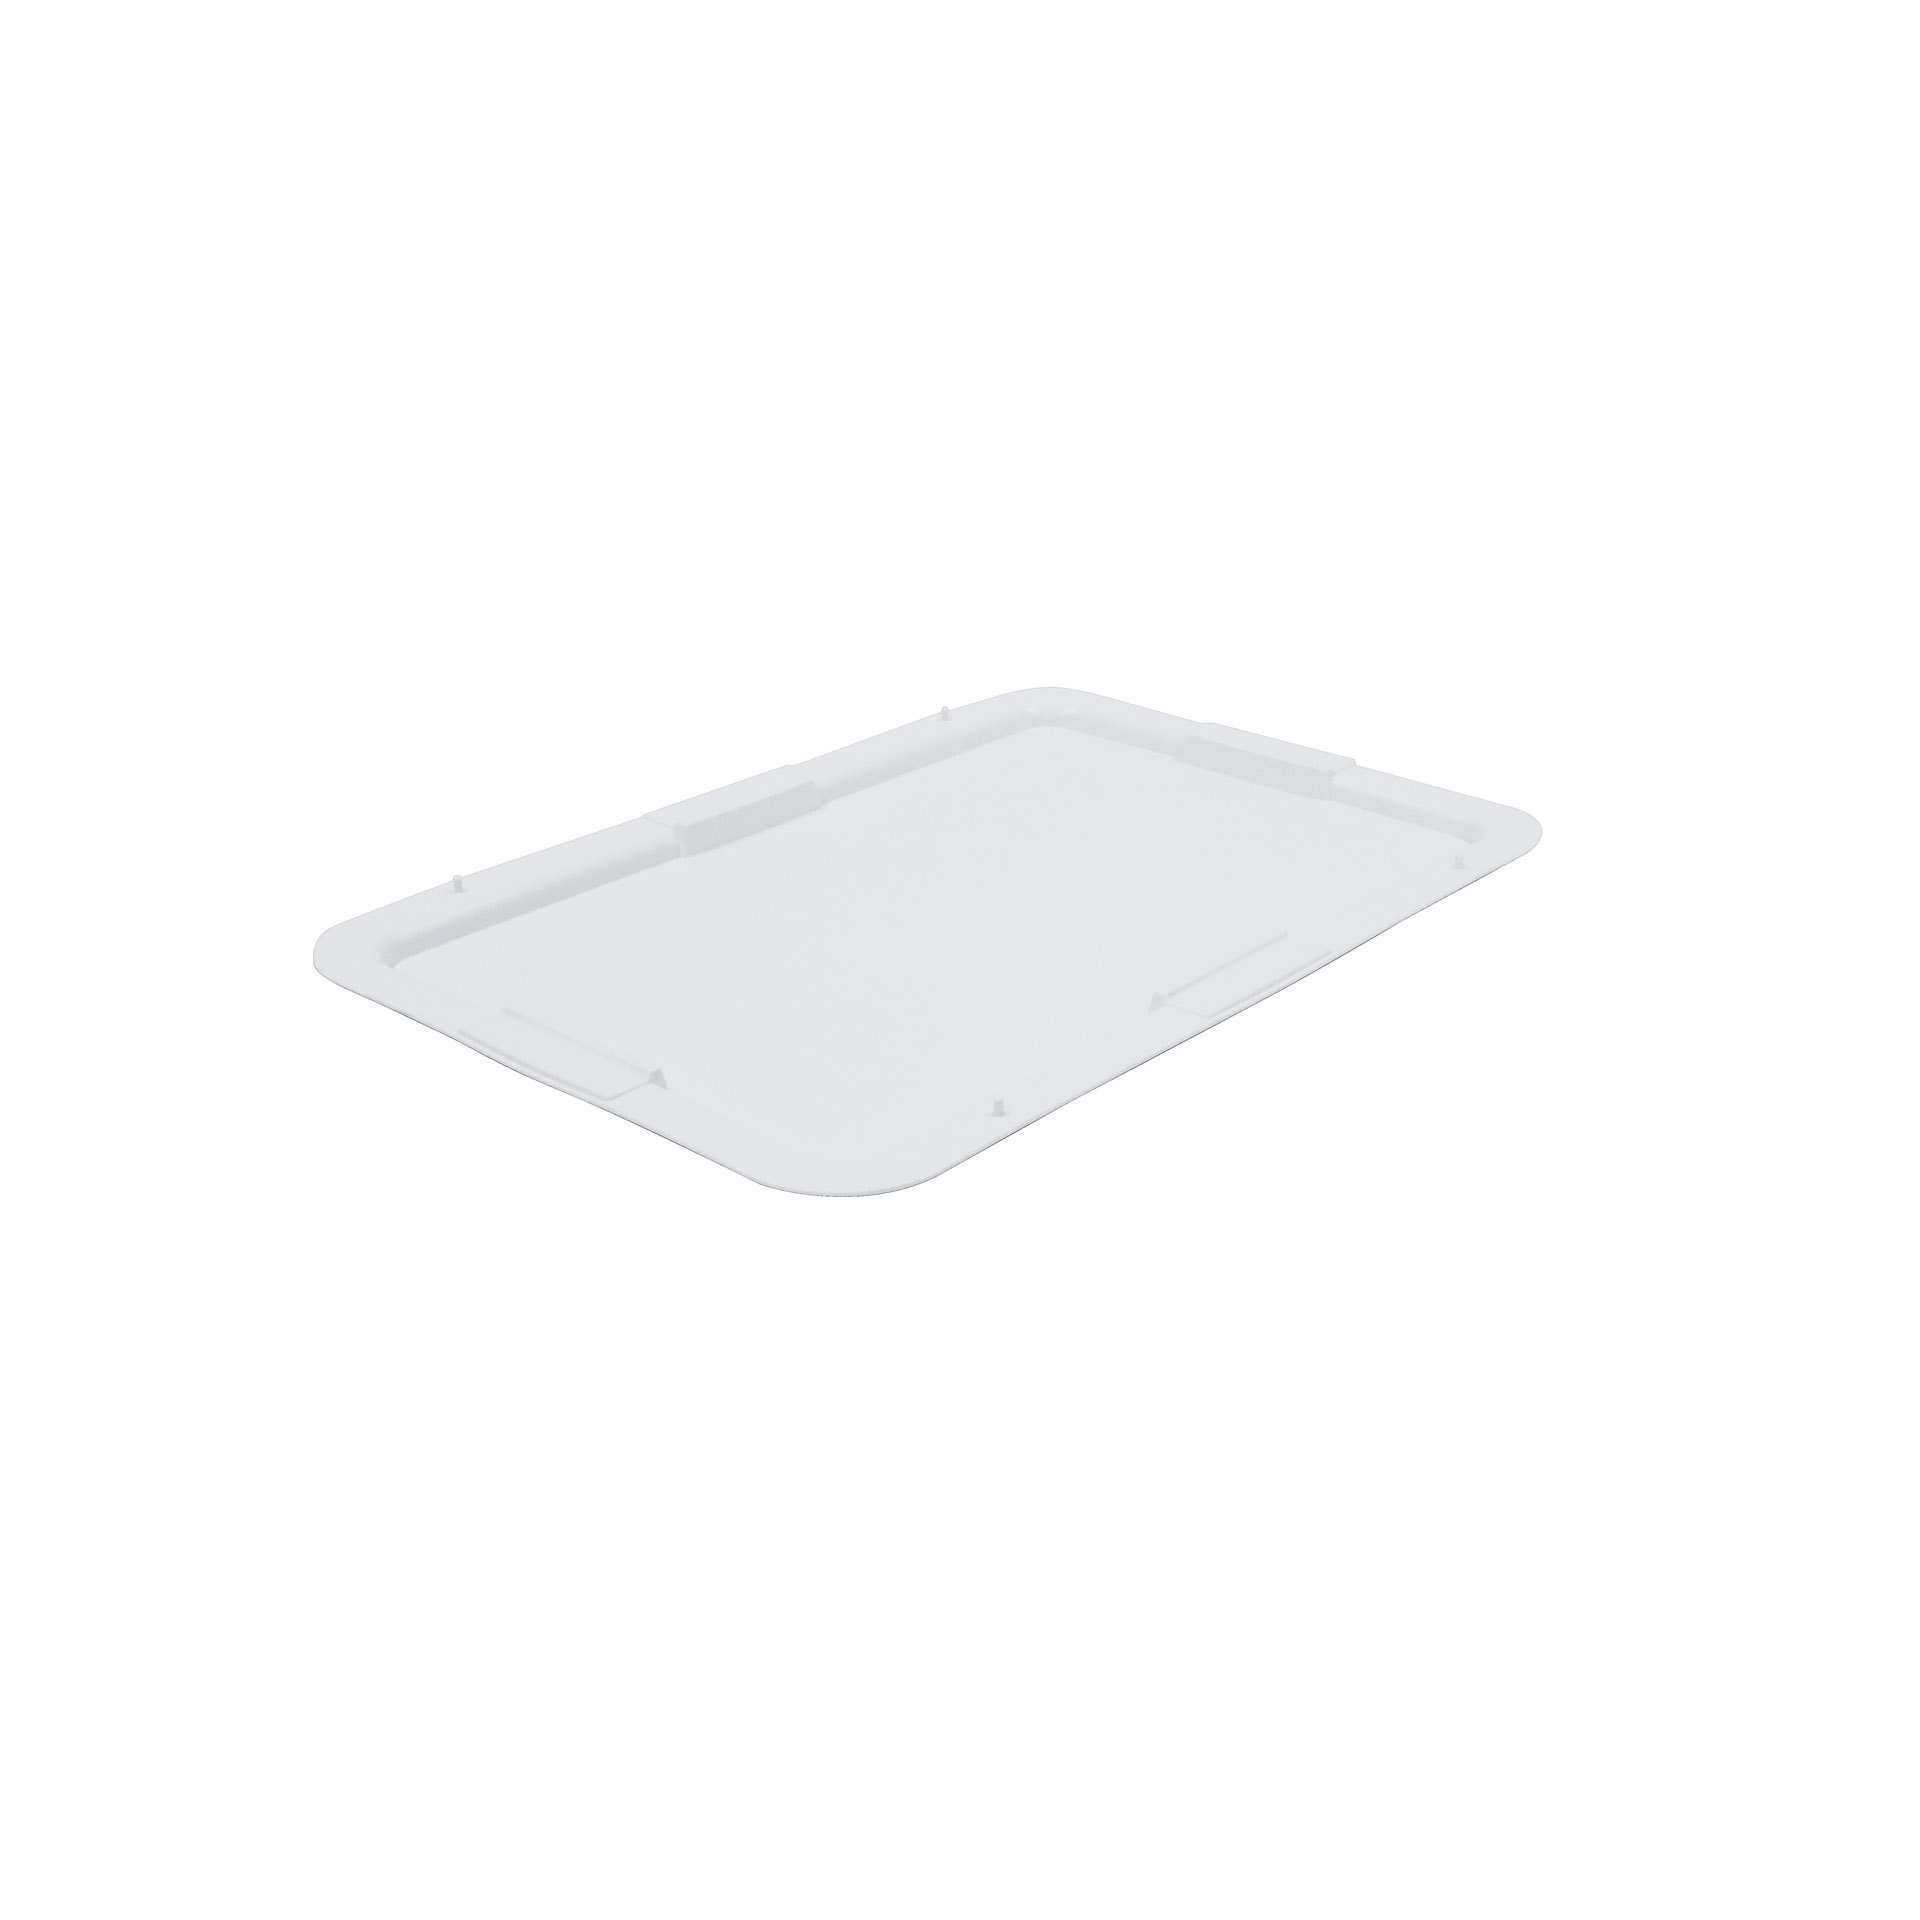 Deckel - für Teigwanne (202180) - weiß - rechteckig - Abm. 60,0 x 40,0 x 3,5 cm - Polypropylen - 202181-C